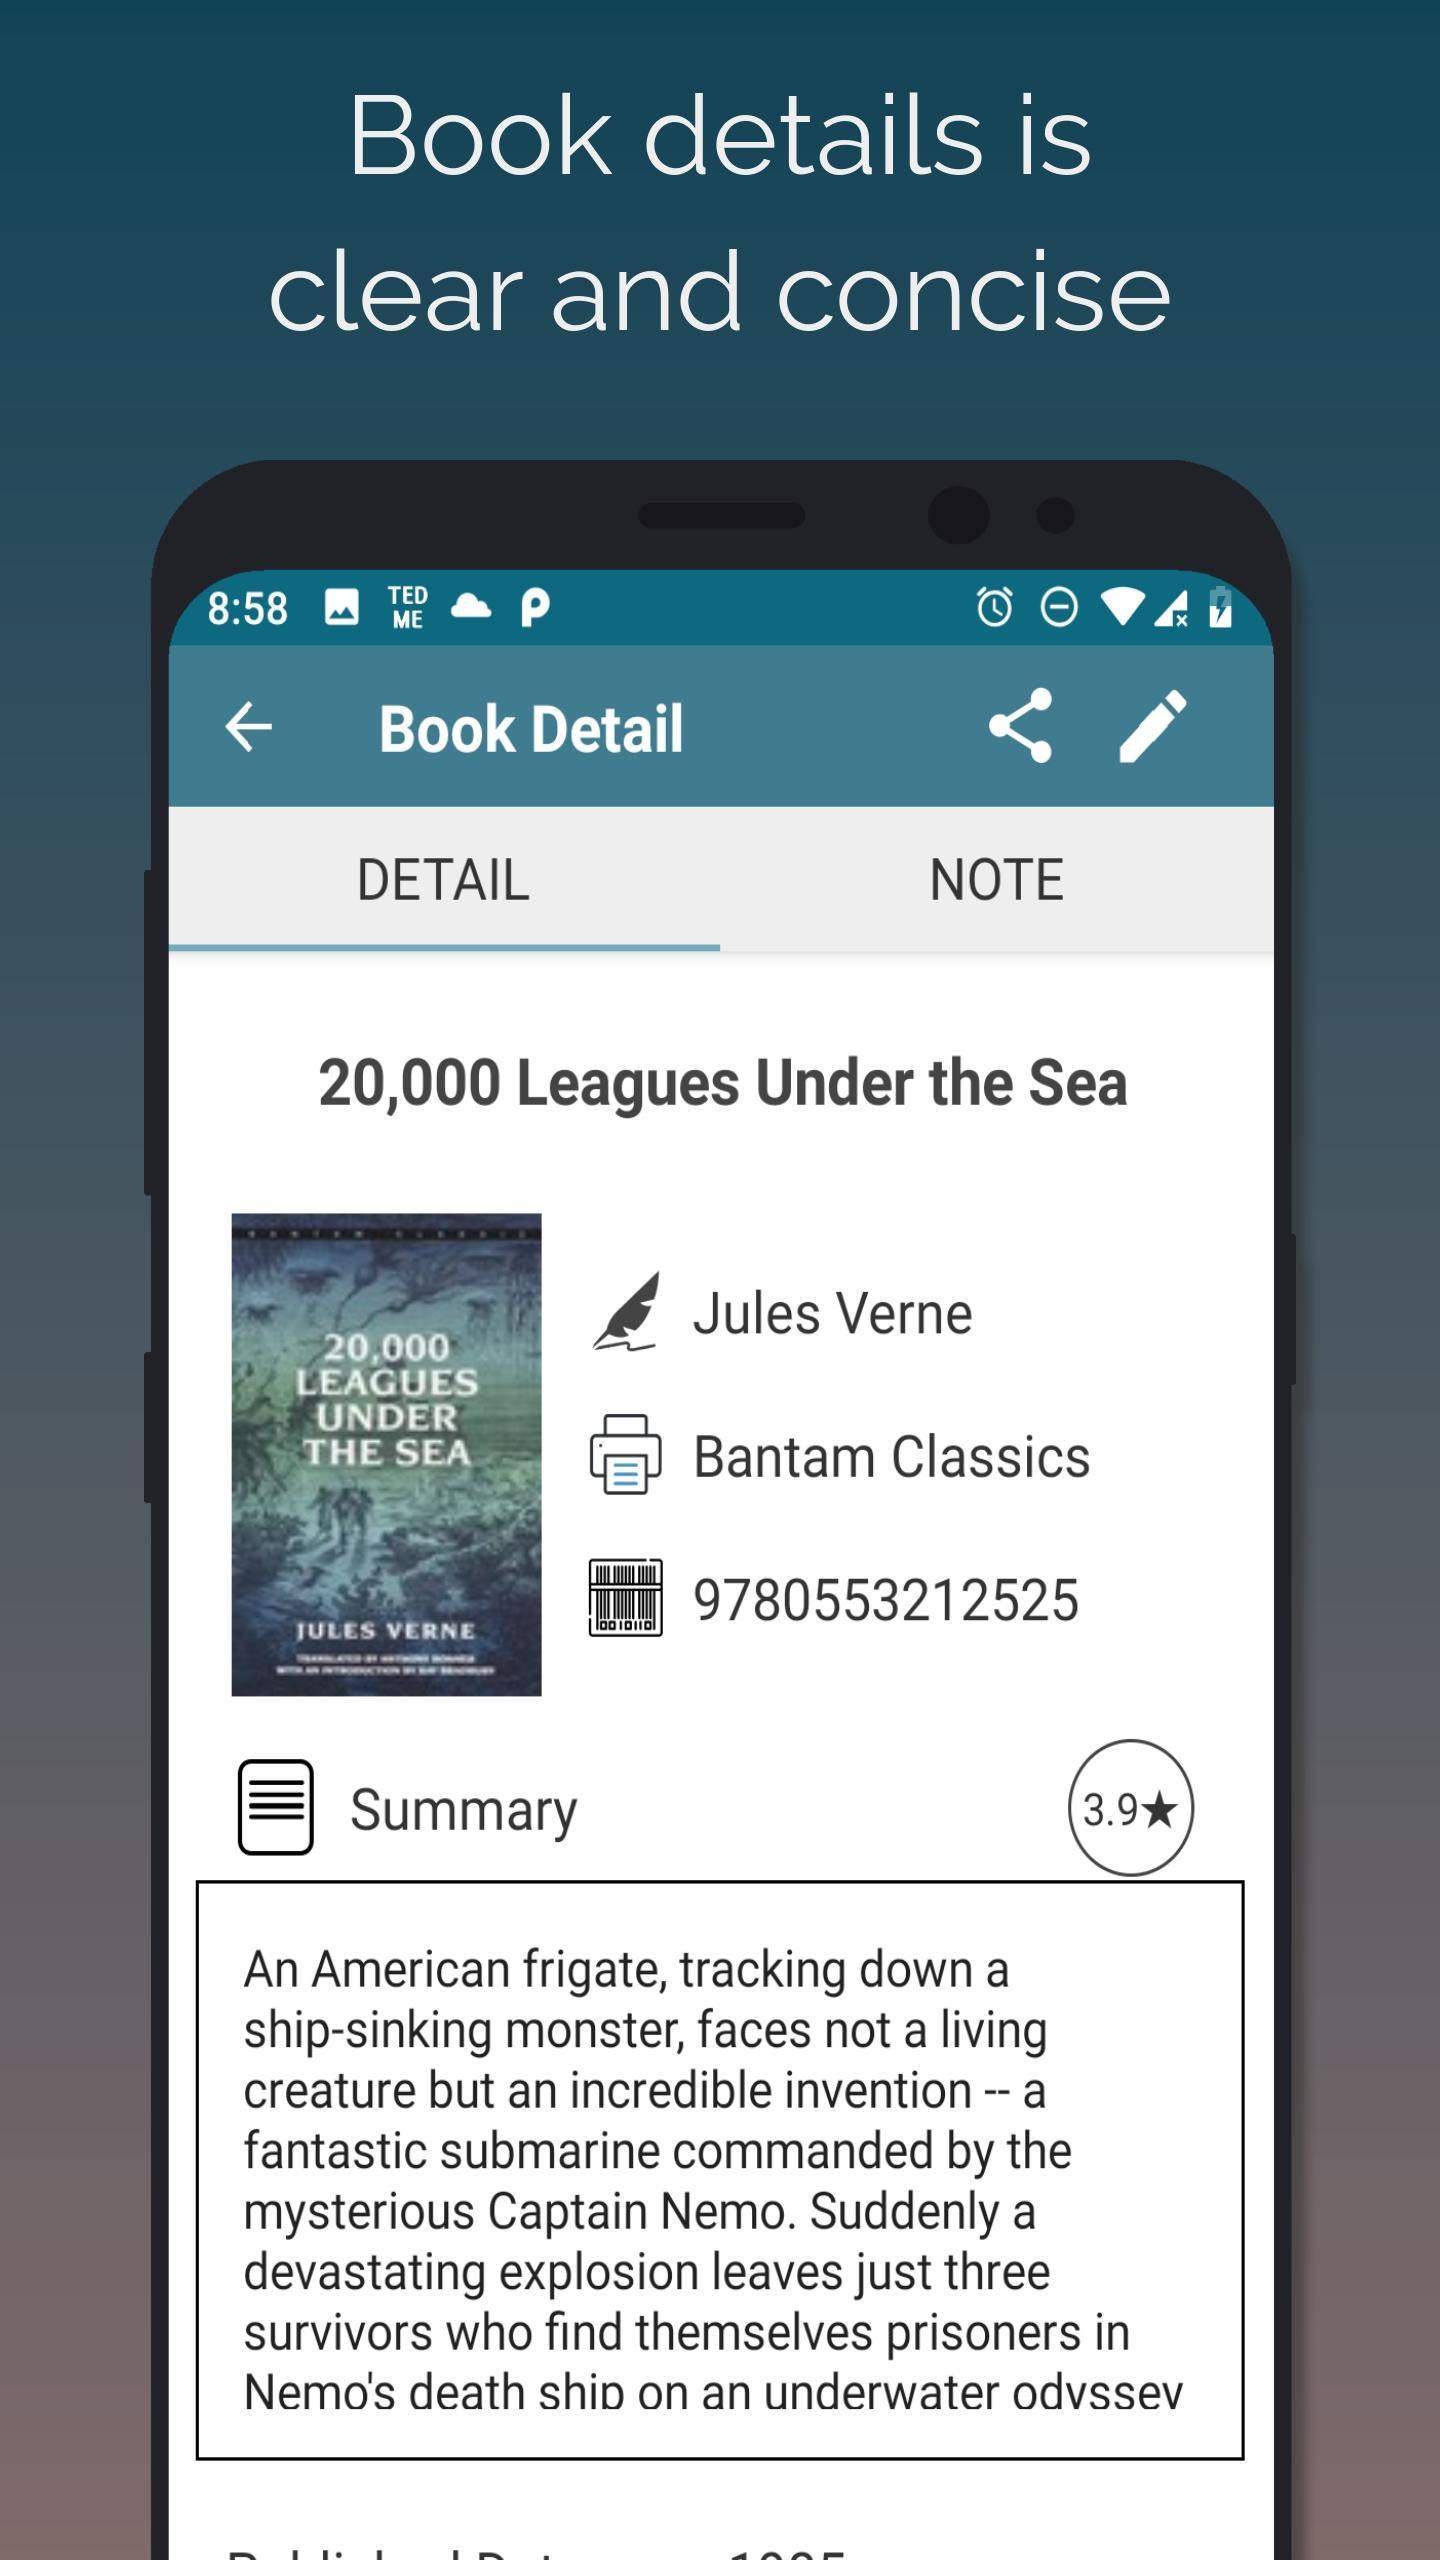 Handy Library For Android Apk Download - la biblioteca library roblox soporte